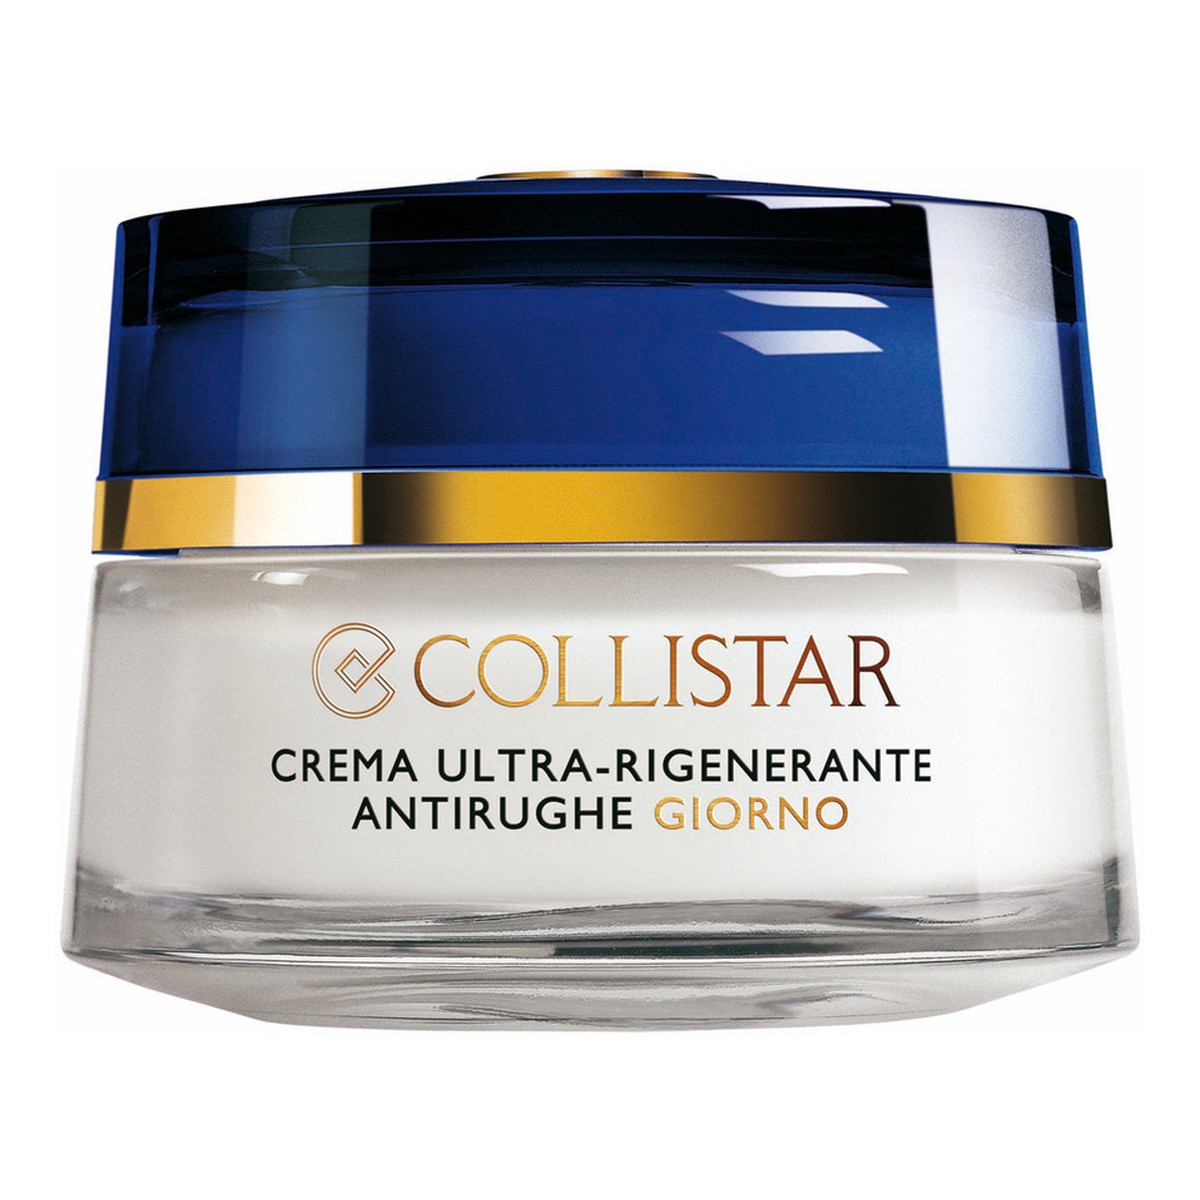 Collistar Ultra-Regenerating Anti-Wrinkle Day Cream ultra regenerujący krem przeciwzmarszczkowy na dzień 50ml